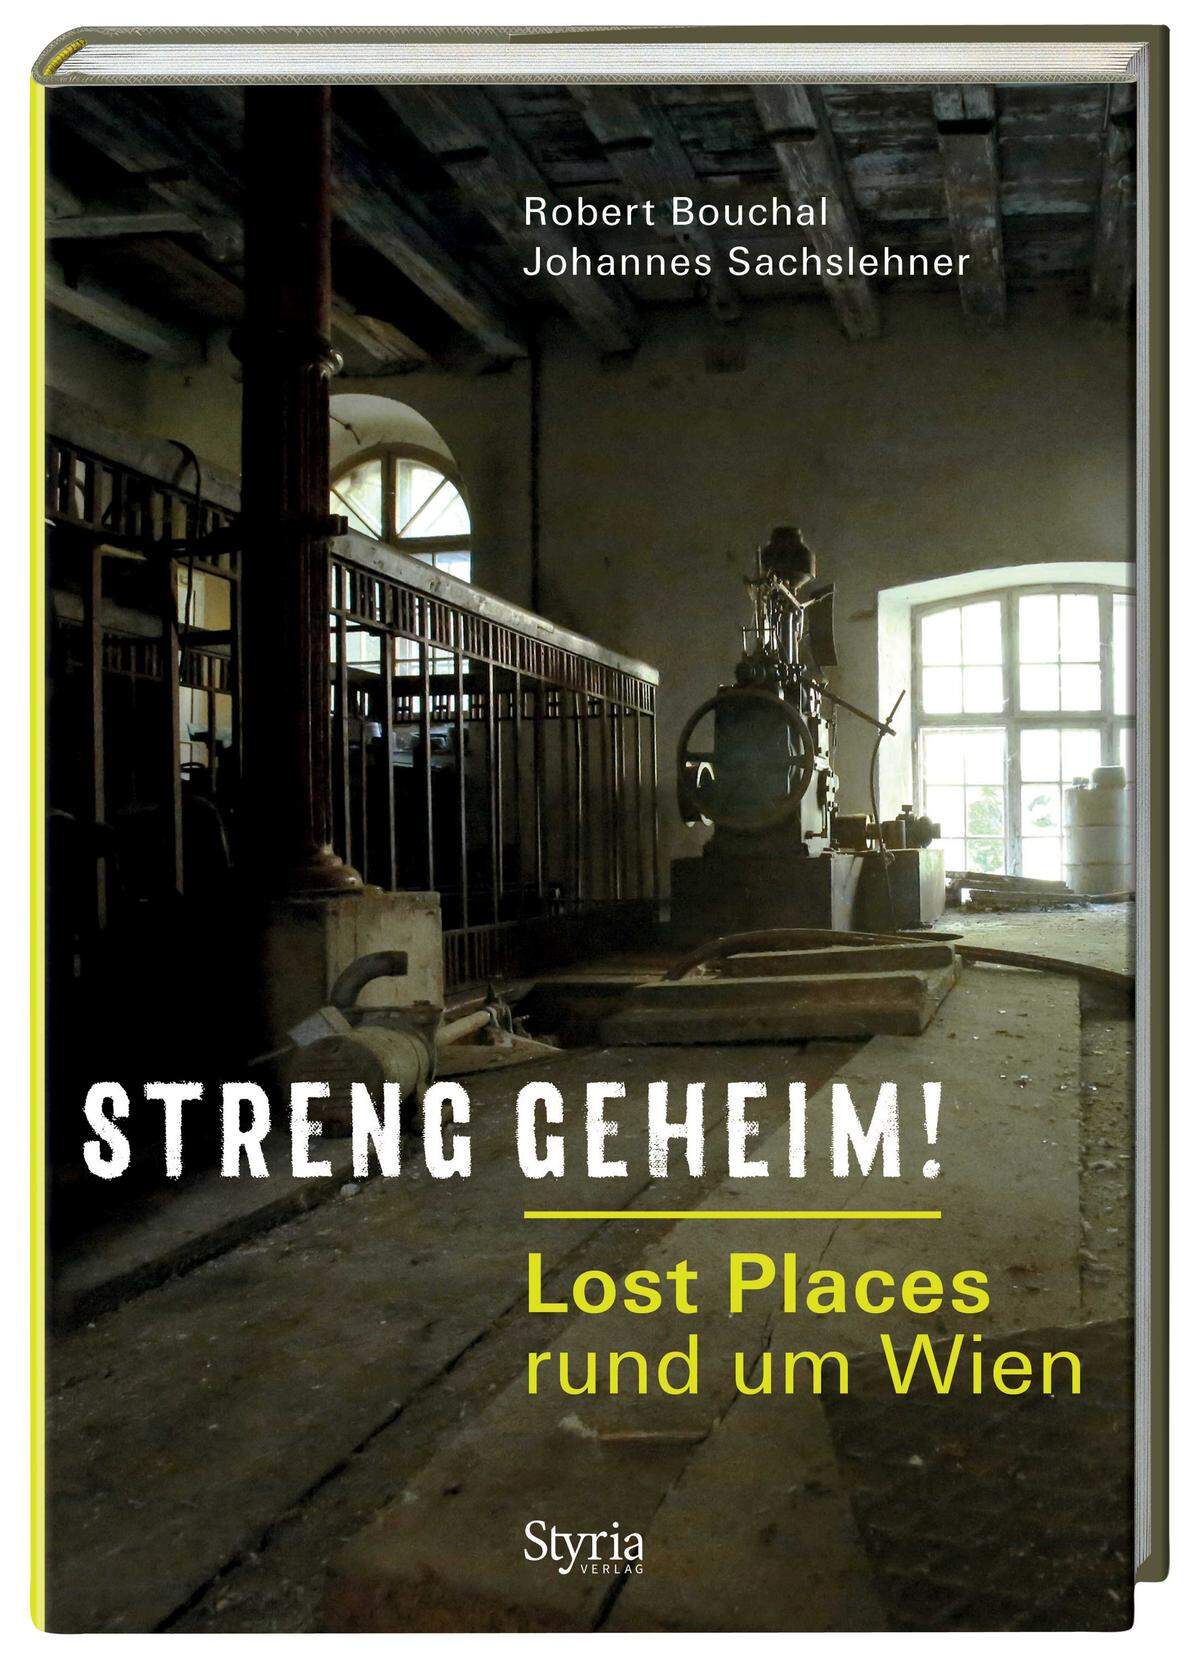 "Streng geheim! Lost Places rund um Wien", Styria Verlag, Hardcover, 240 Seiten, ab 27 Euro.